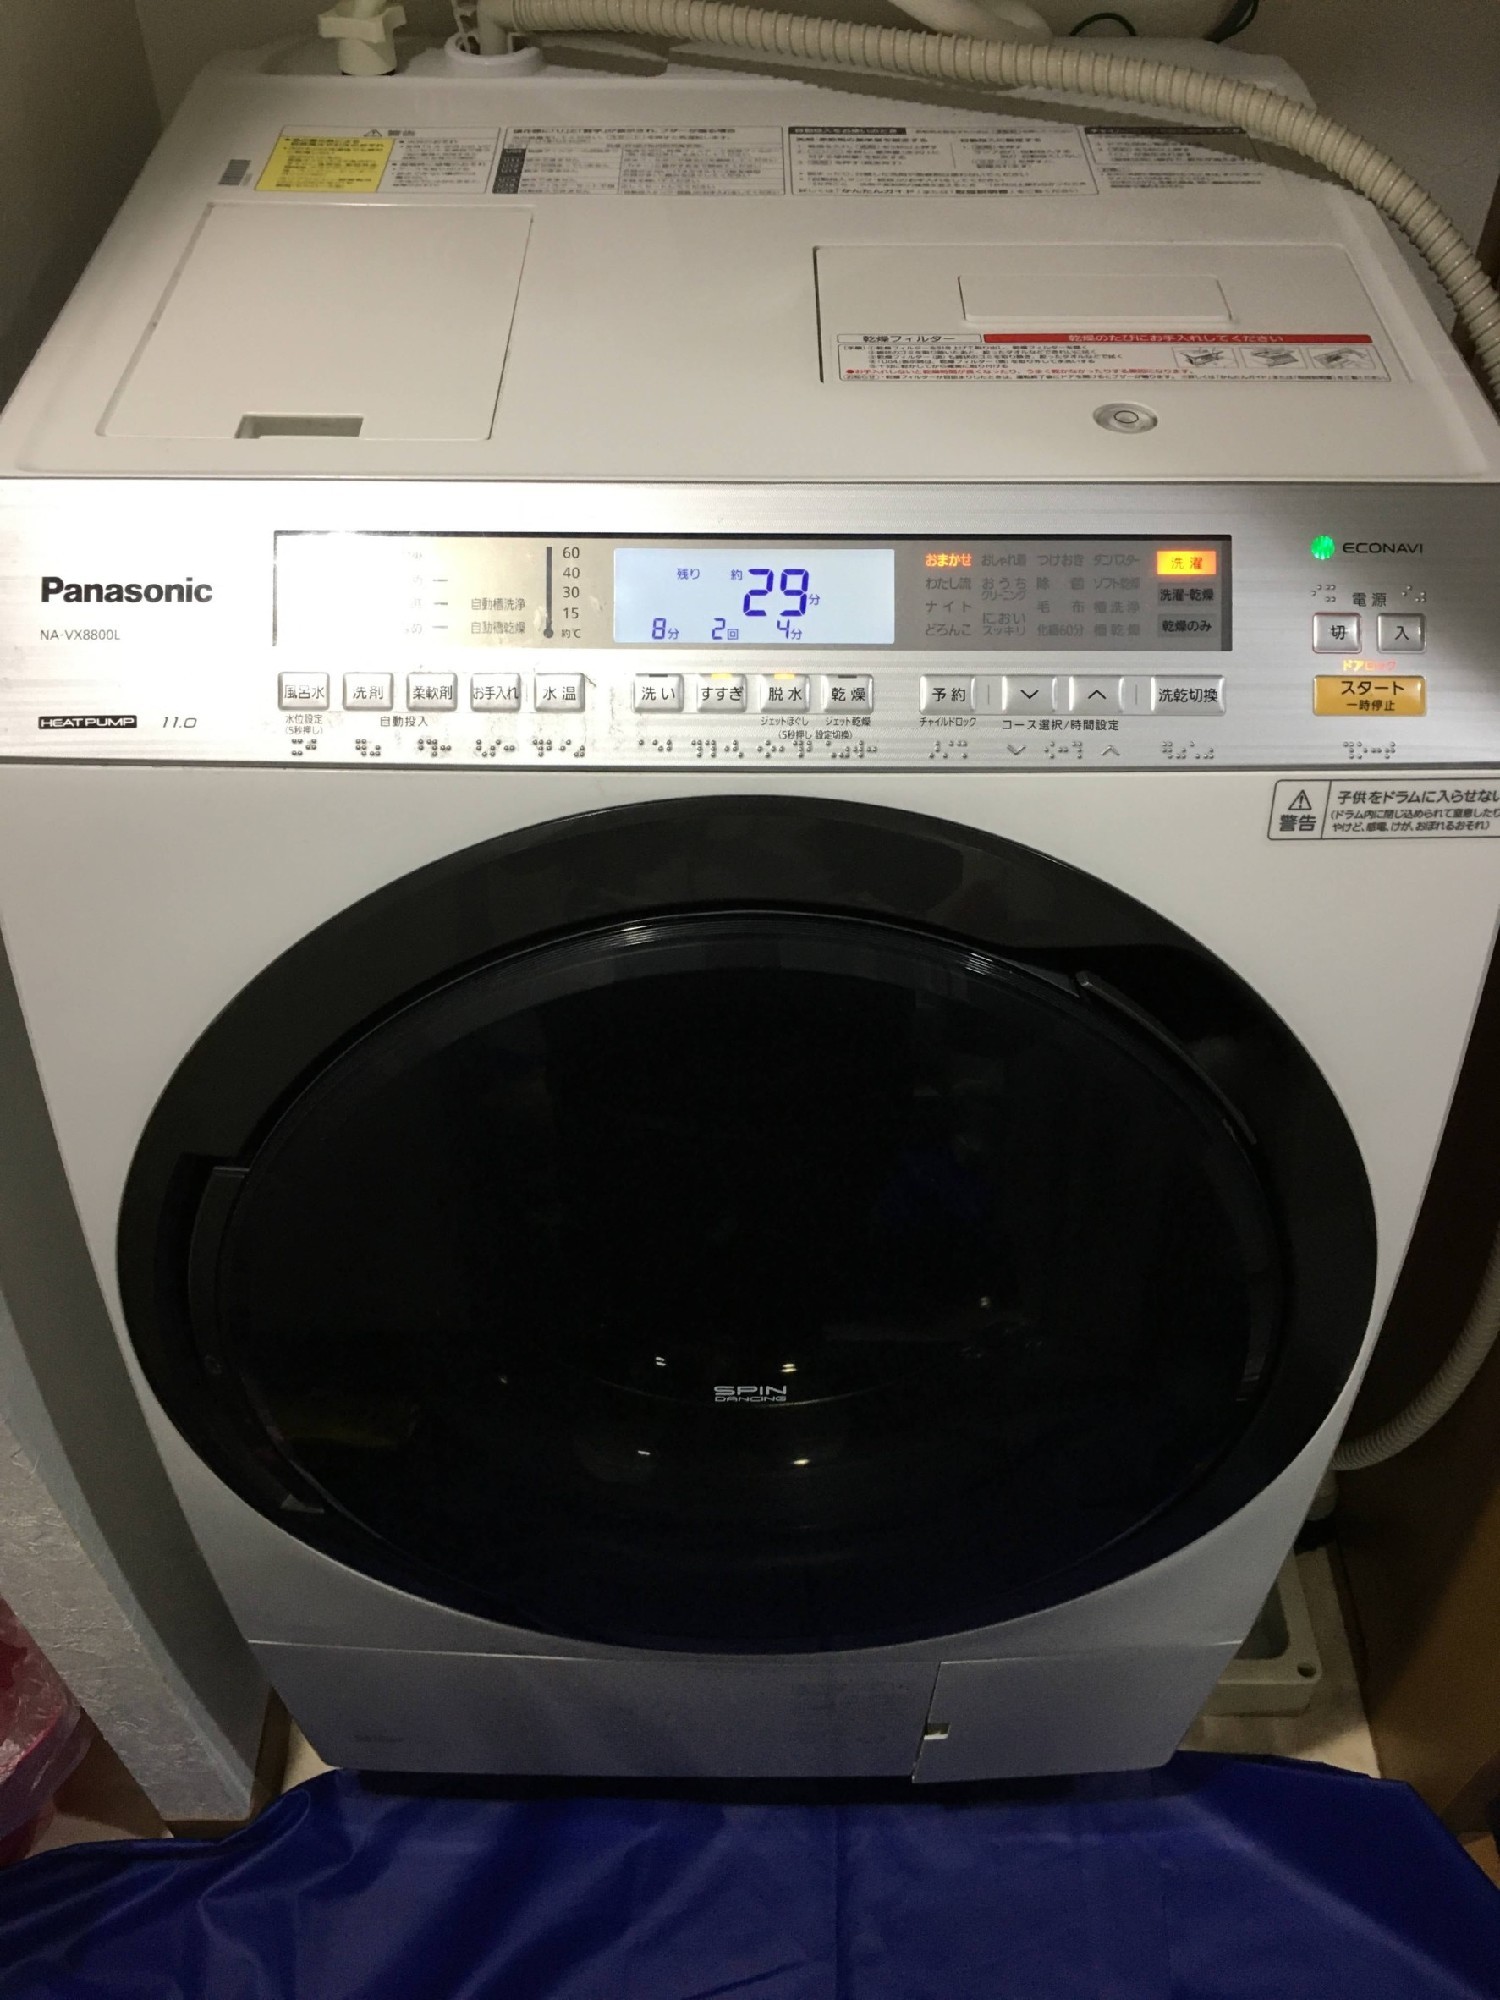 ドラム式洗濯機を分解清掃してびっくり 柔軟剤を多用するとなぜ洗濯機が汚れるのか ハウスクリーニング 鳥山修史 マイベストプロ神戸